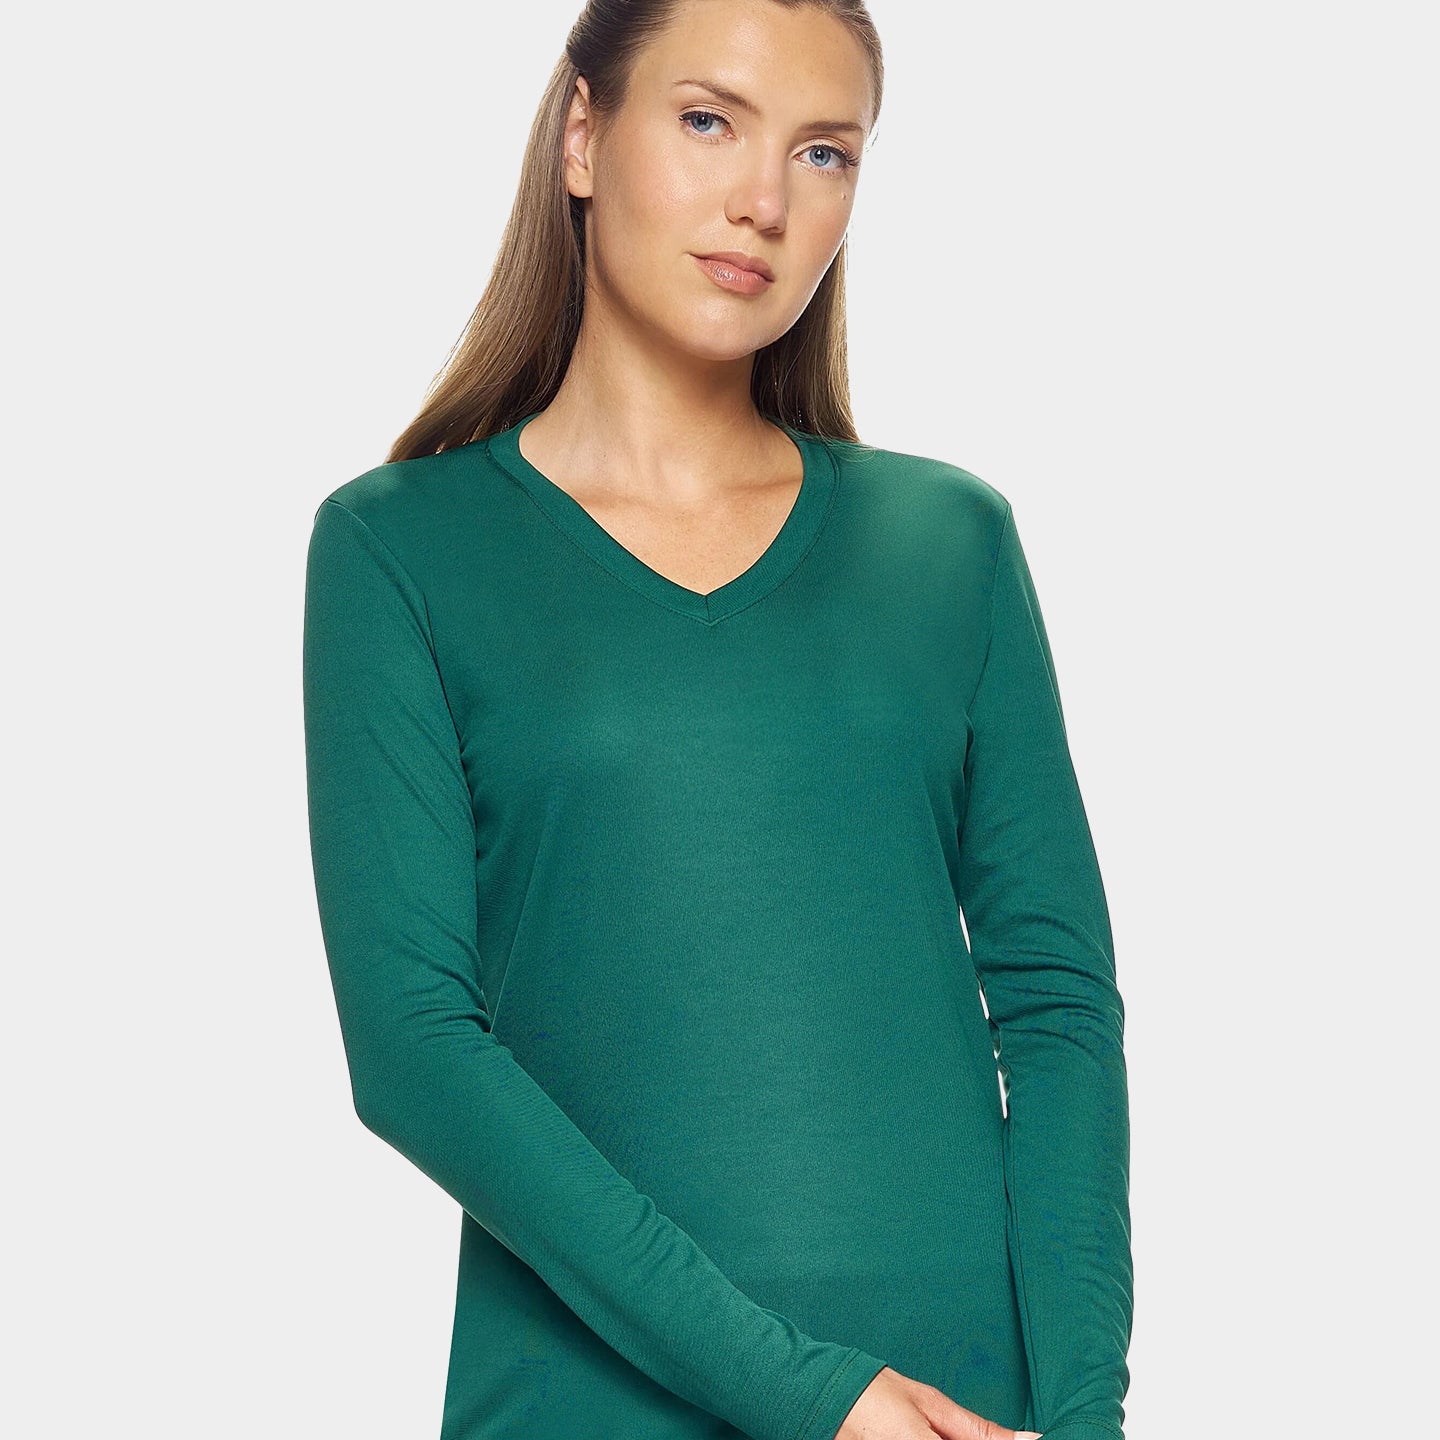 Expert Brand DriMax Women's Performance V-Neck Long Sleeve Shirt, XL, Forest Green A1